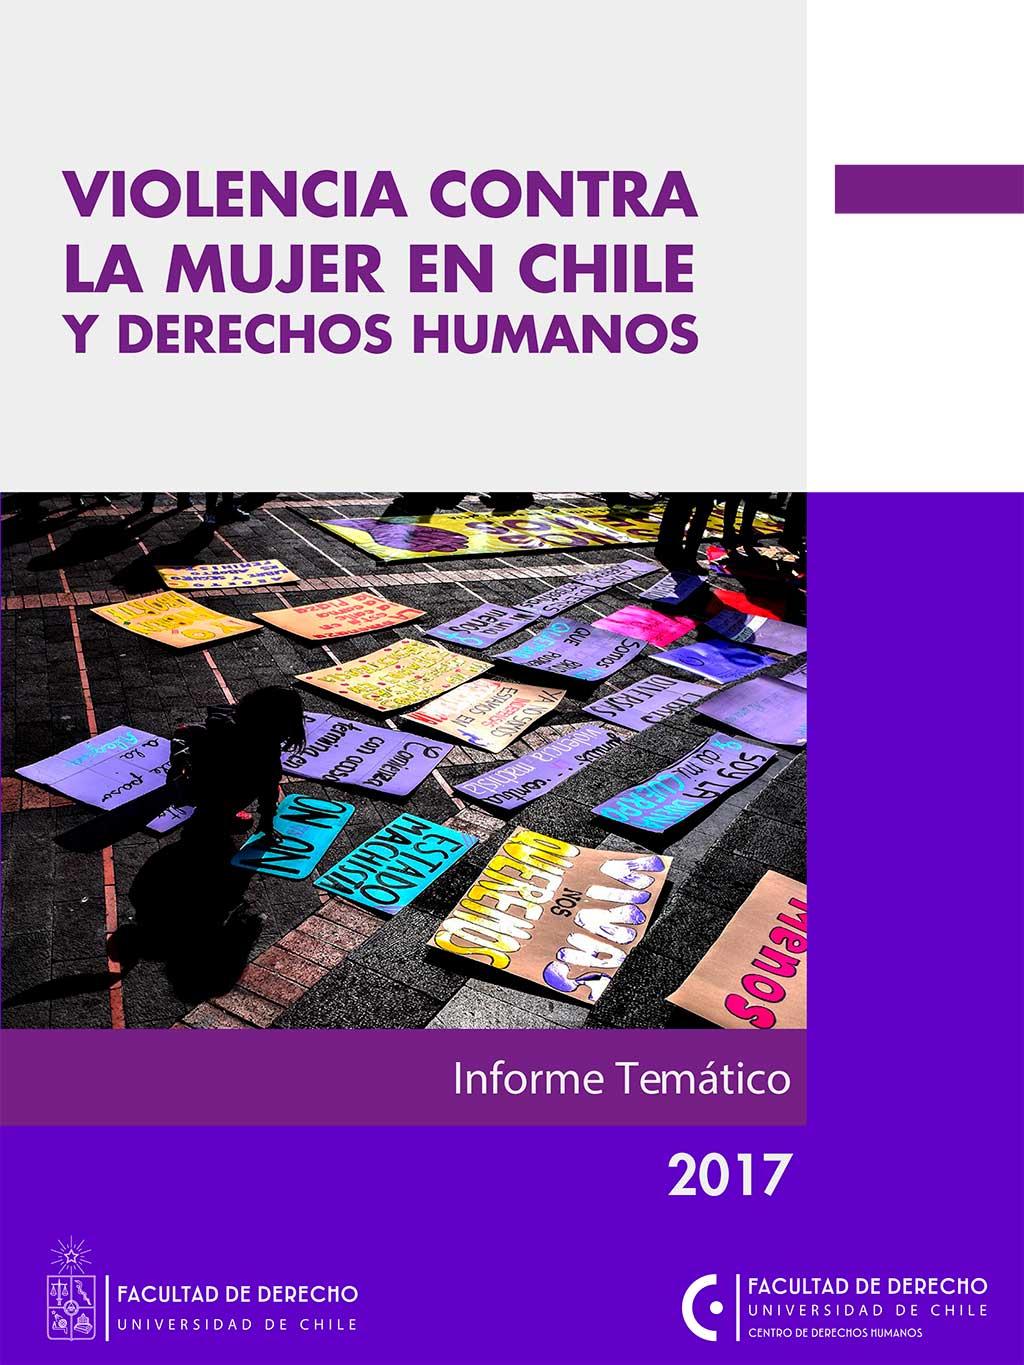 Informe temático "Violencia contra la mujer en Chile y Derechos Humanos"